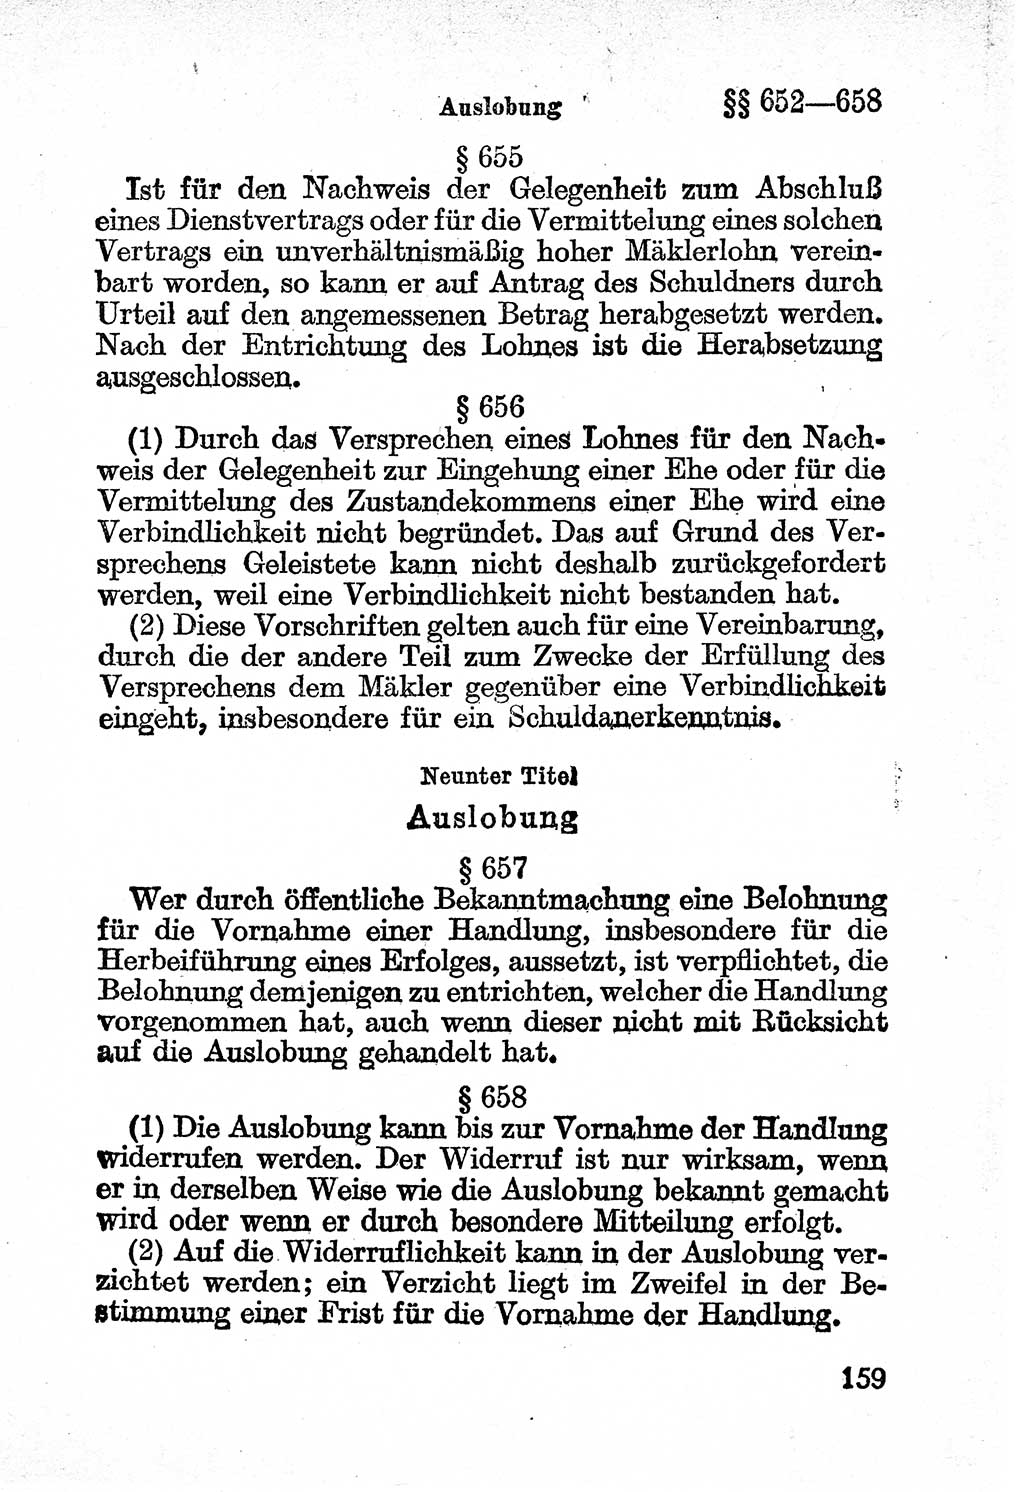 Bürgerliches Gesetzbuch (BGB) nebst wichtigen Nebengesetzen [Deutsche Demokratische Republik (DDR)] 1956, Seite 159 (BGB Nebenges. DDR 1956, S. 159)